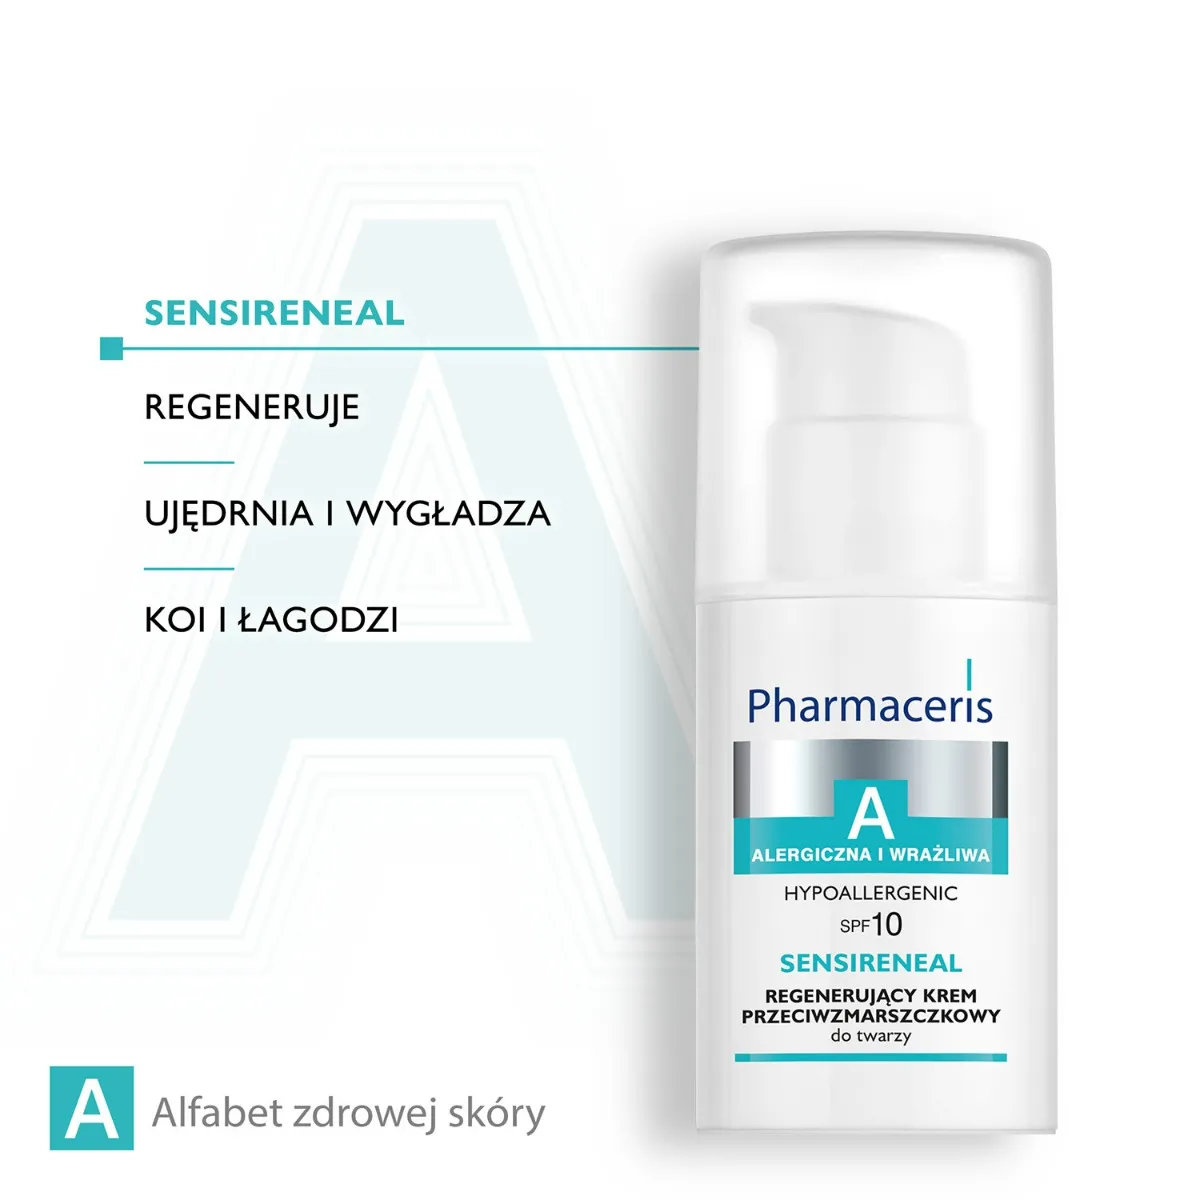 Pharmaceris A Sensireneal, regenerujący krem przeciwzmarszczkowy do twarzy, SPF 10, 30 ml 